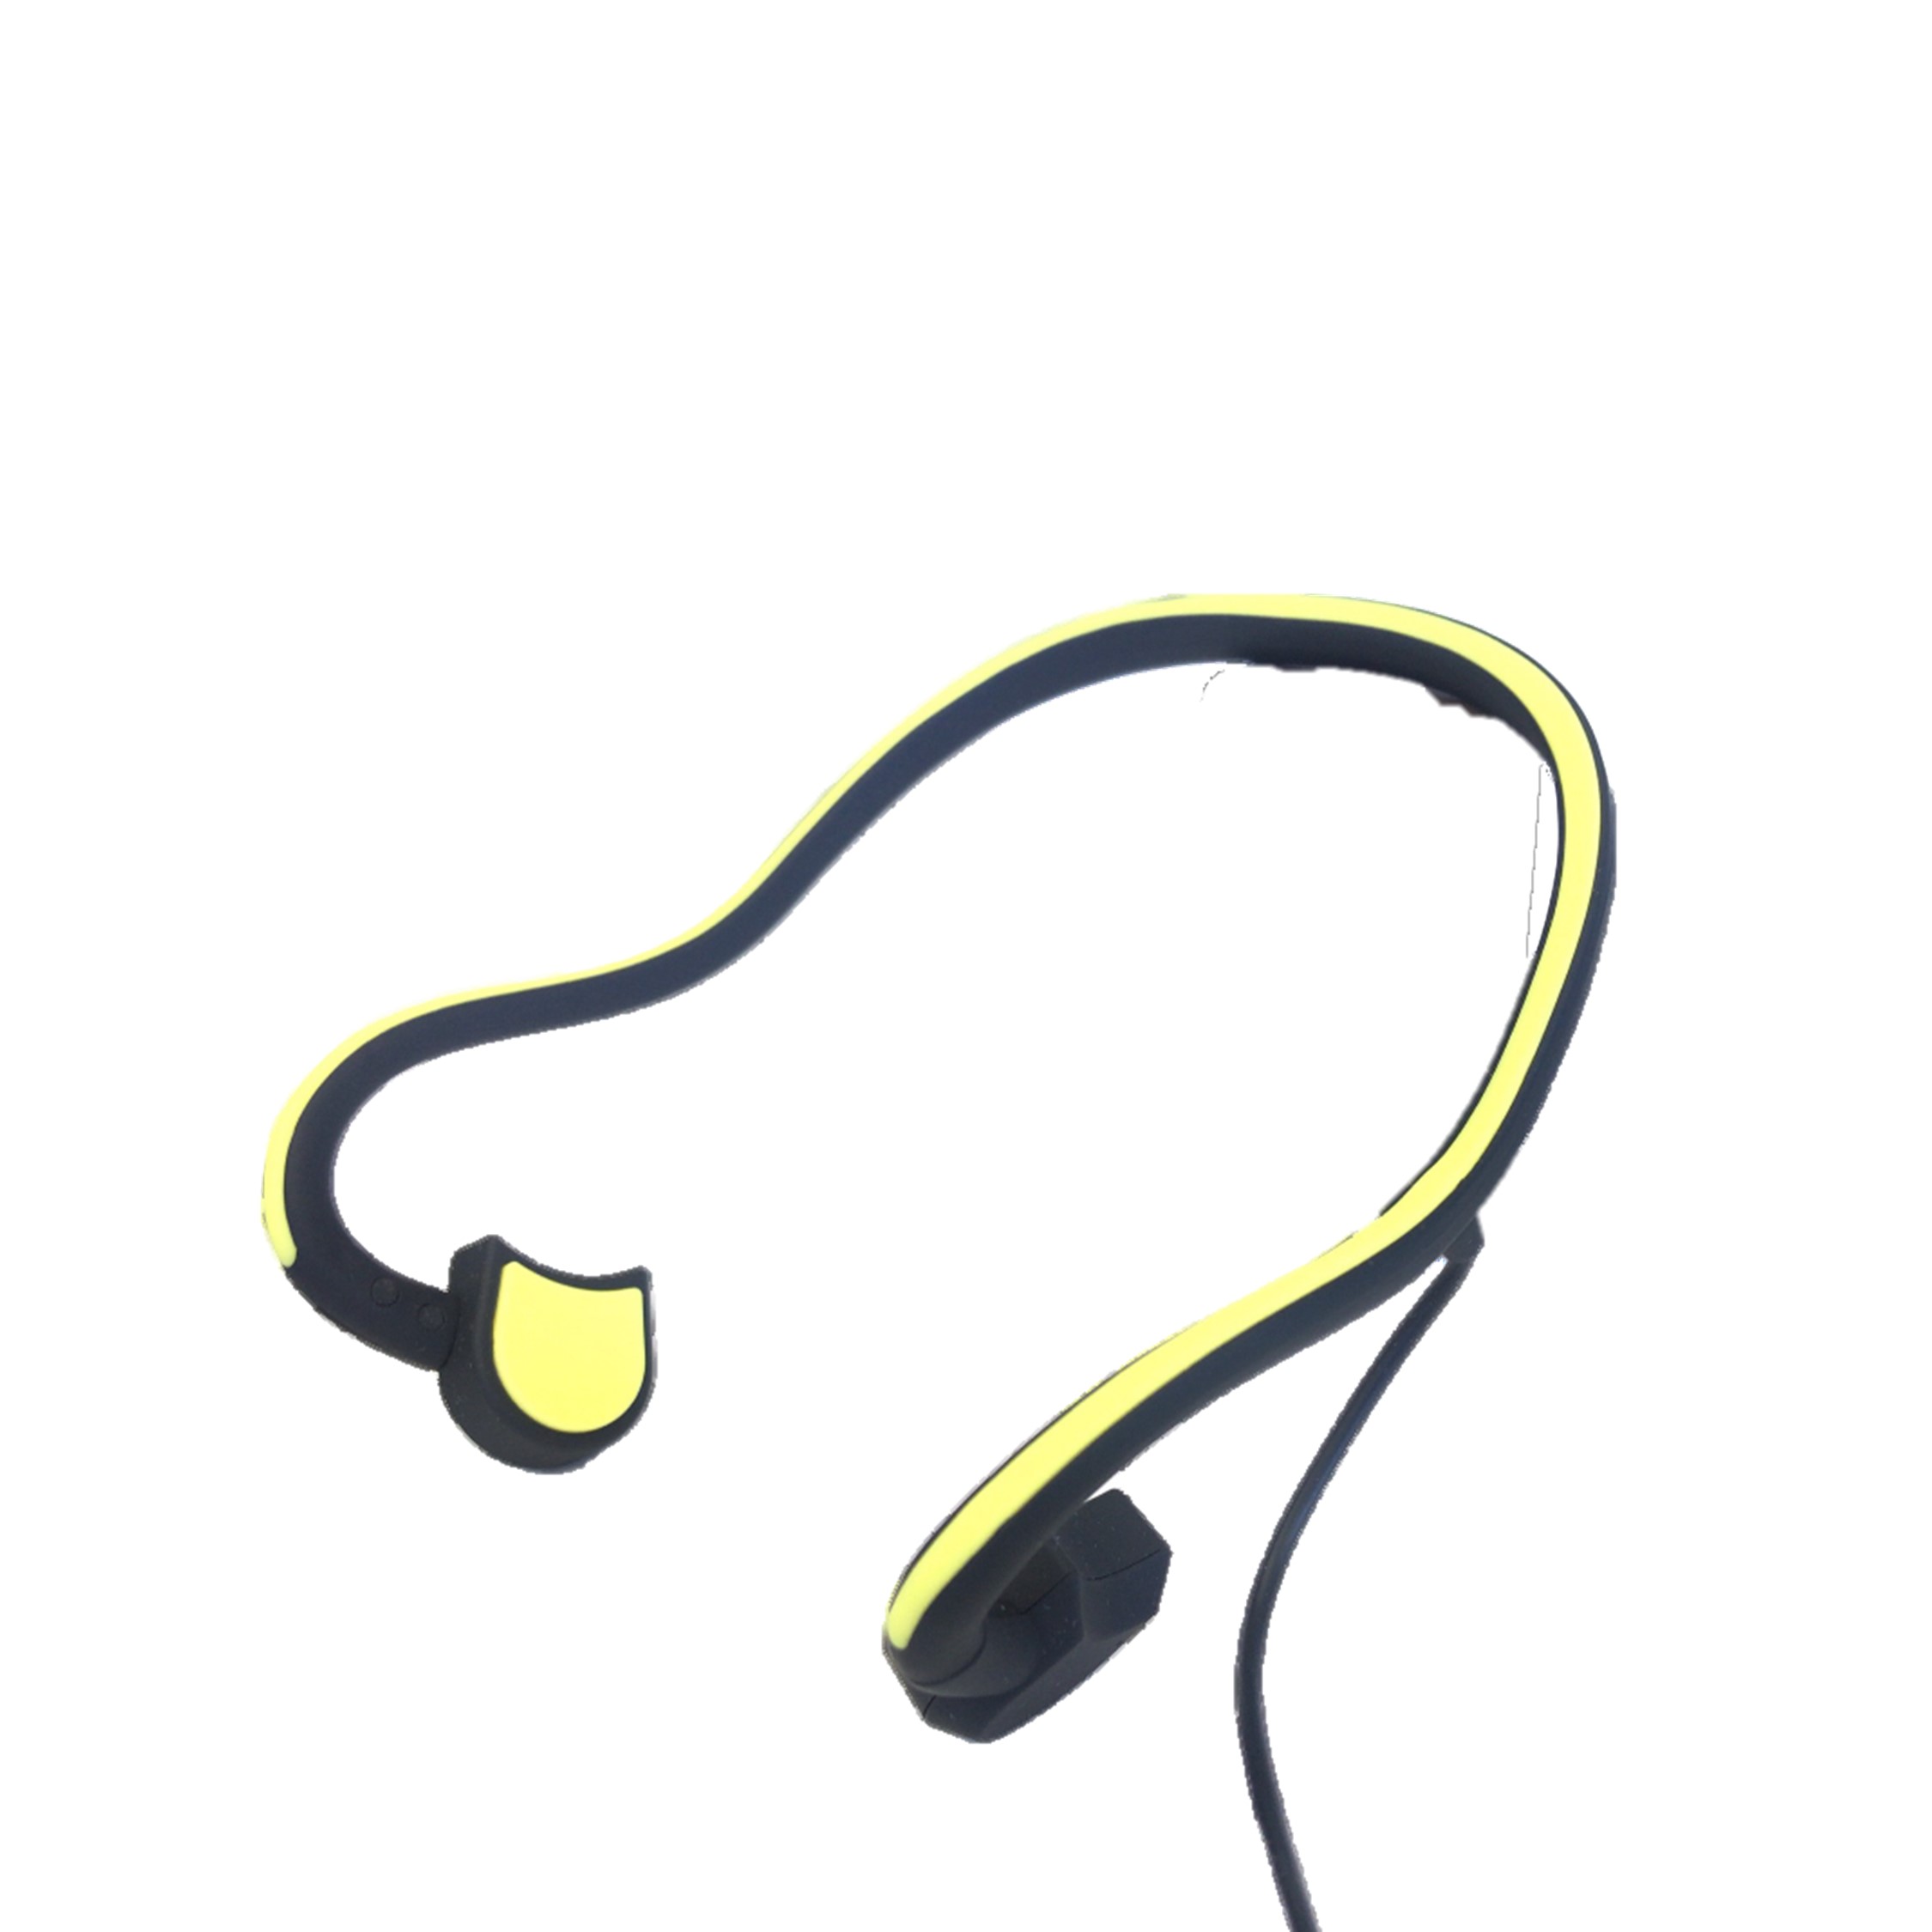 【スポーツの日】骨伝導イヤホン イエロー Bluetooth 軽量タイプ オープンイヤー 耳掛け式 eggBT